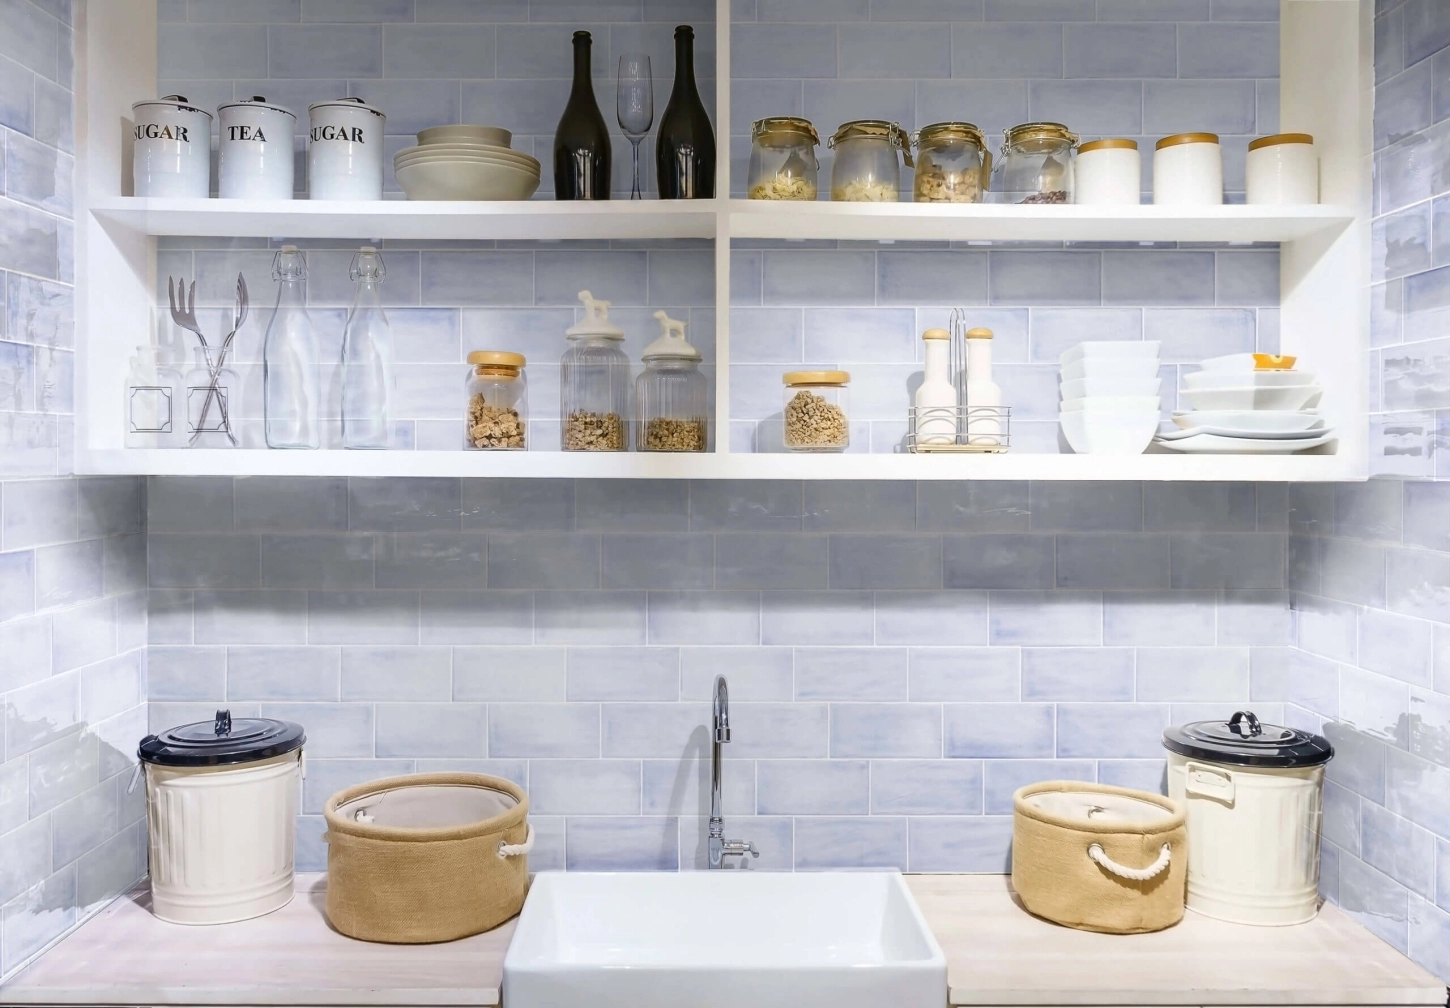 Kies je voor keramische wandtegels voor je keuken?